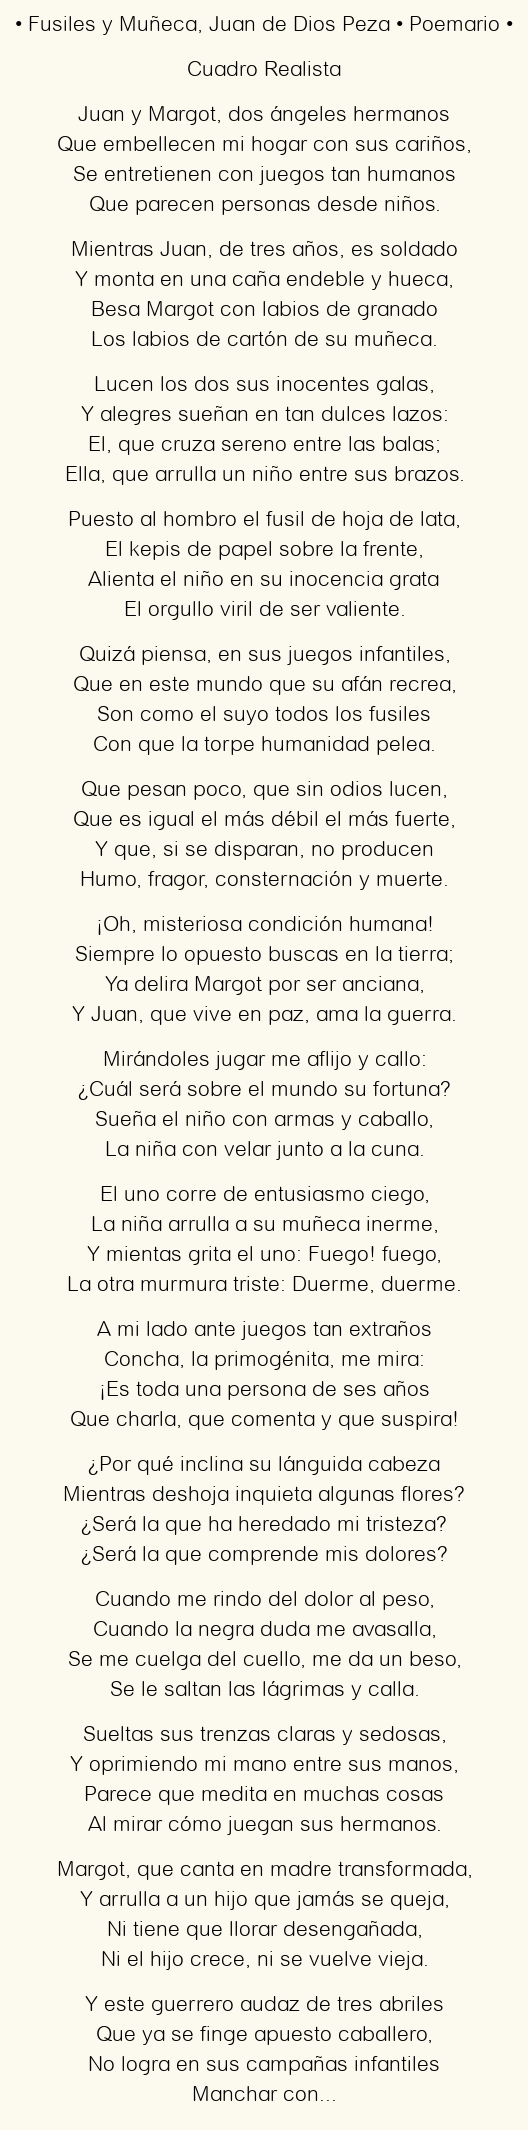 Imagen con el poema Fusiles y Muñeca, por Juan de Dios Peza